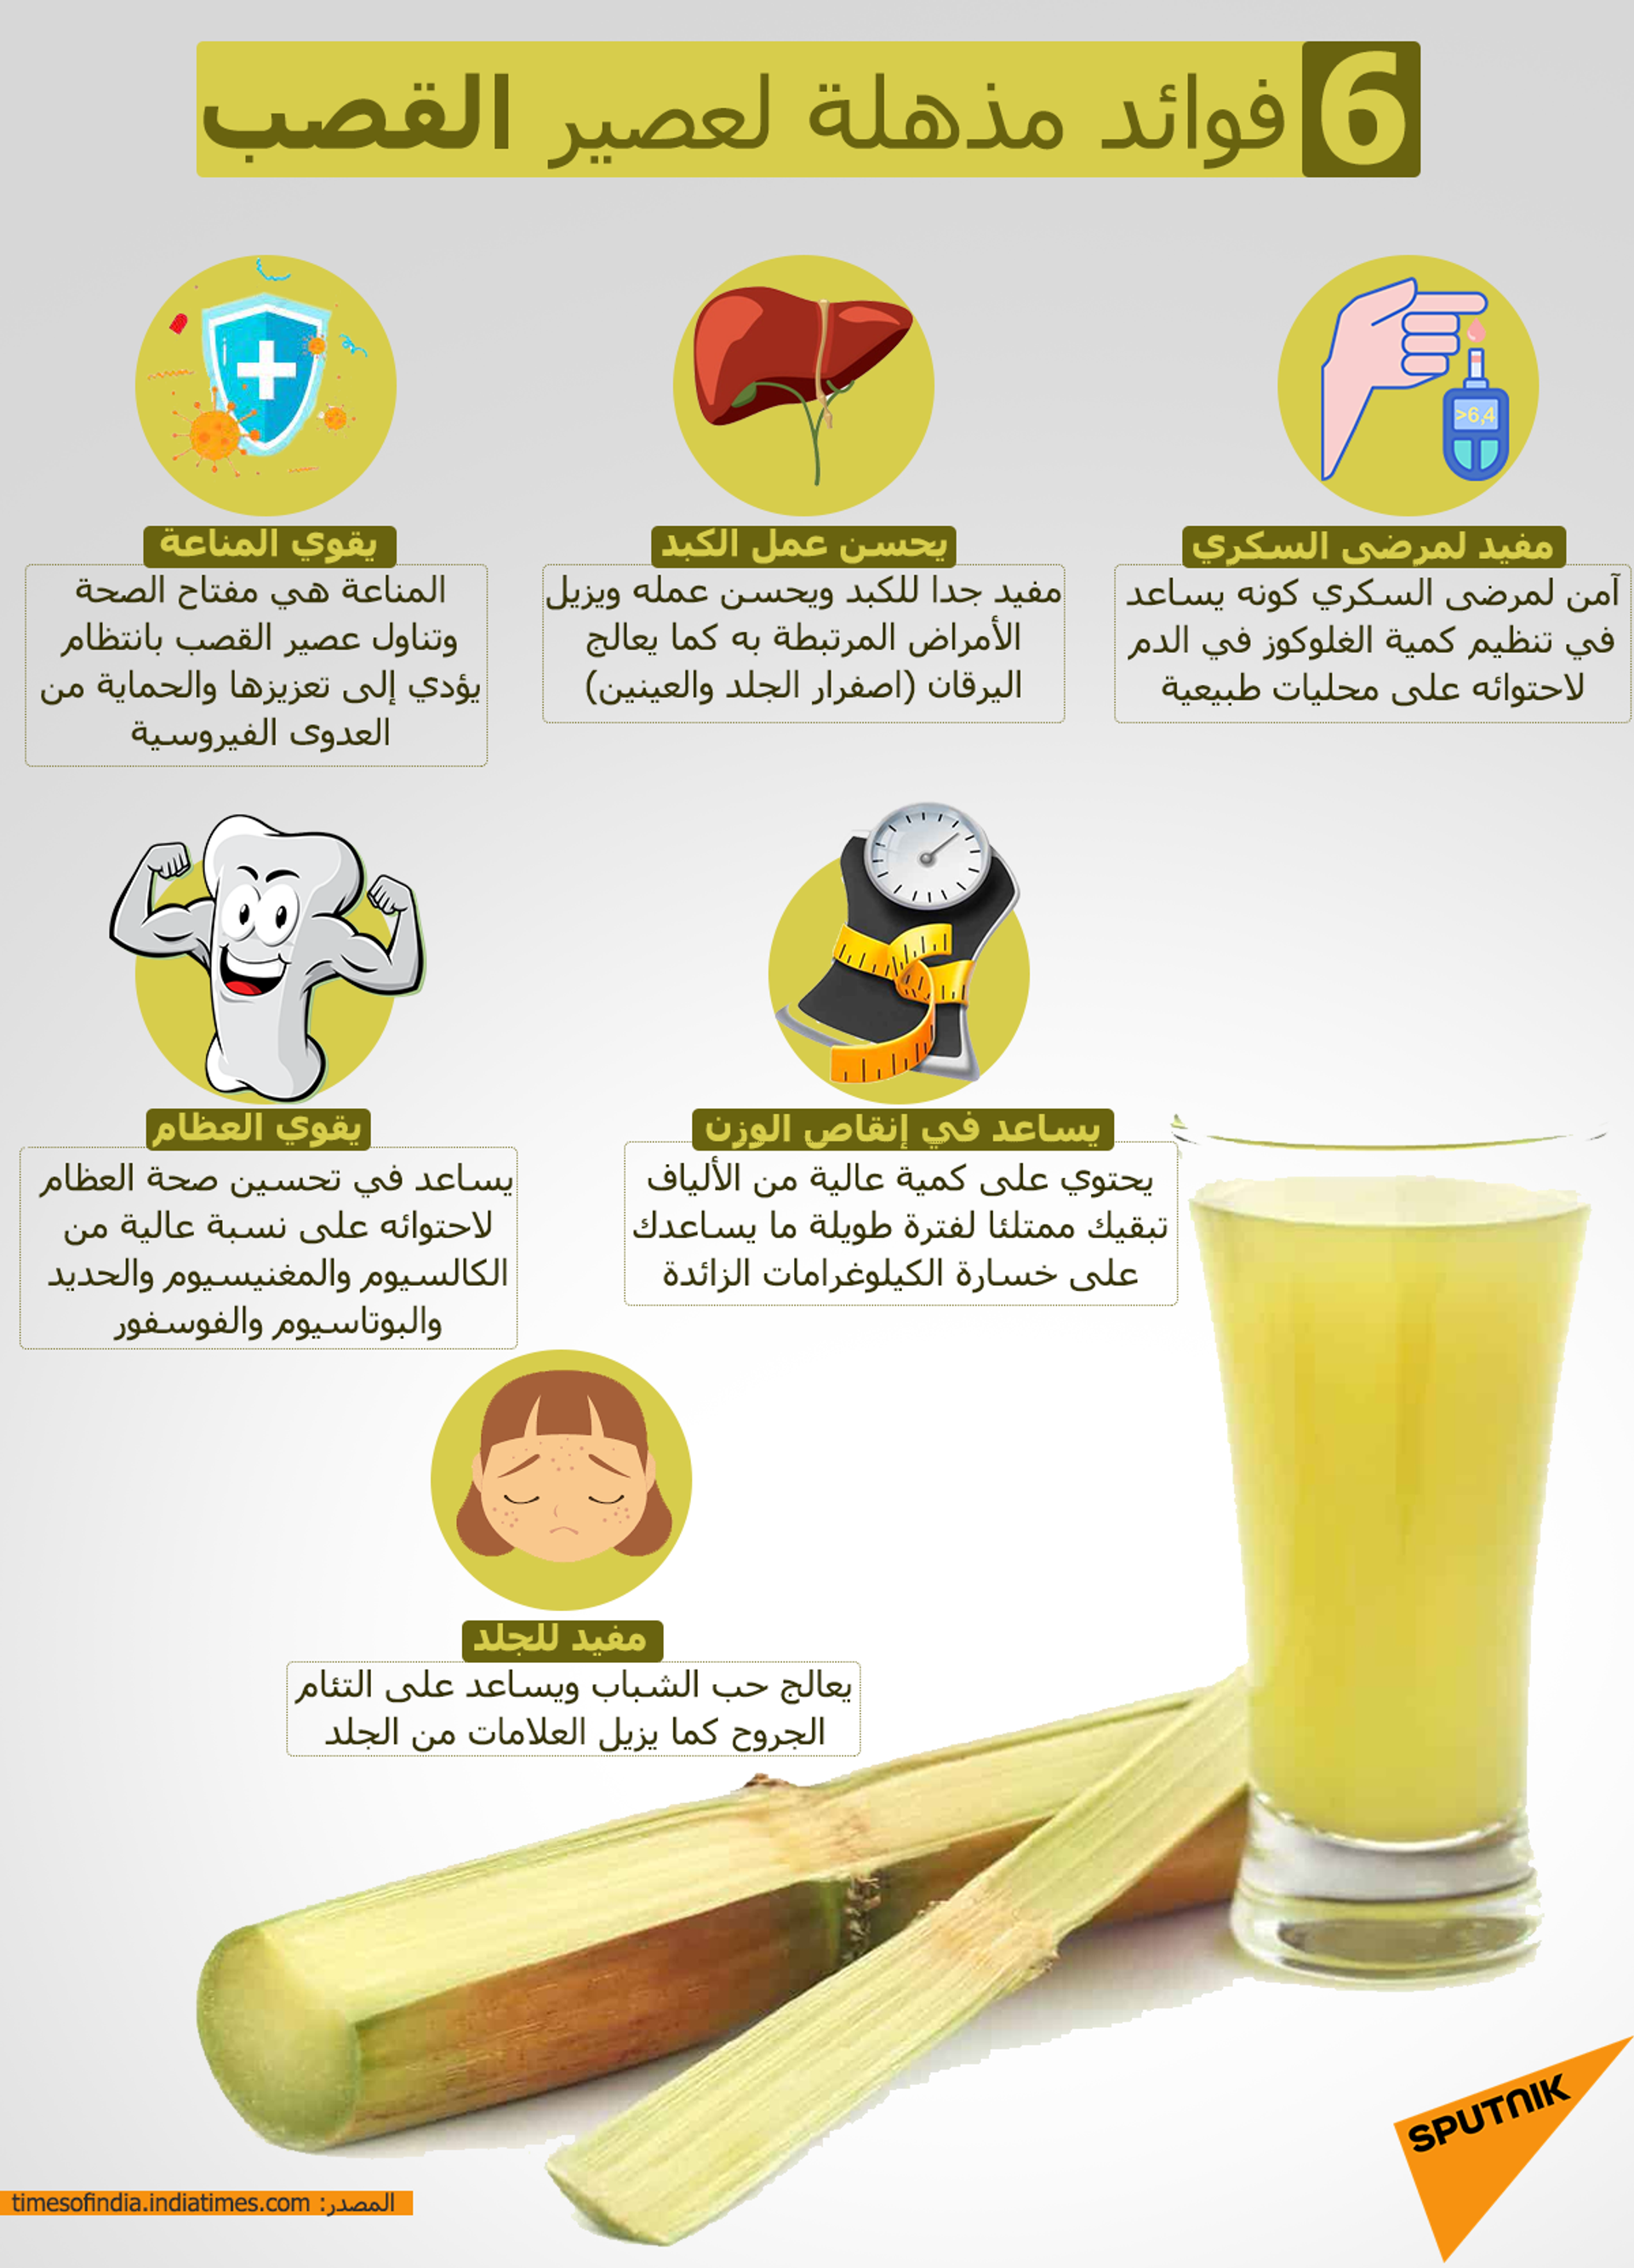 6 فوائد مذهلة لعصير القصب - سبوتنيك عربي, 1920, 20.08.2021